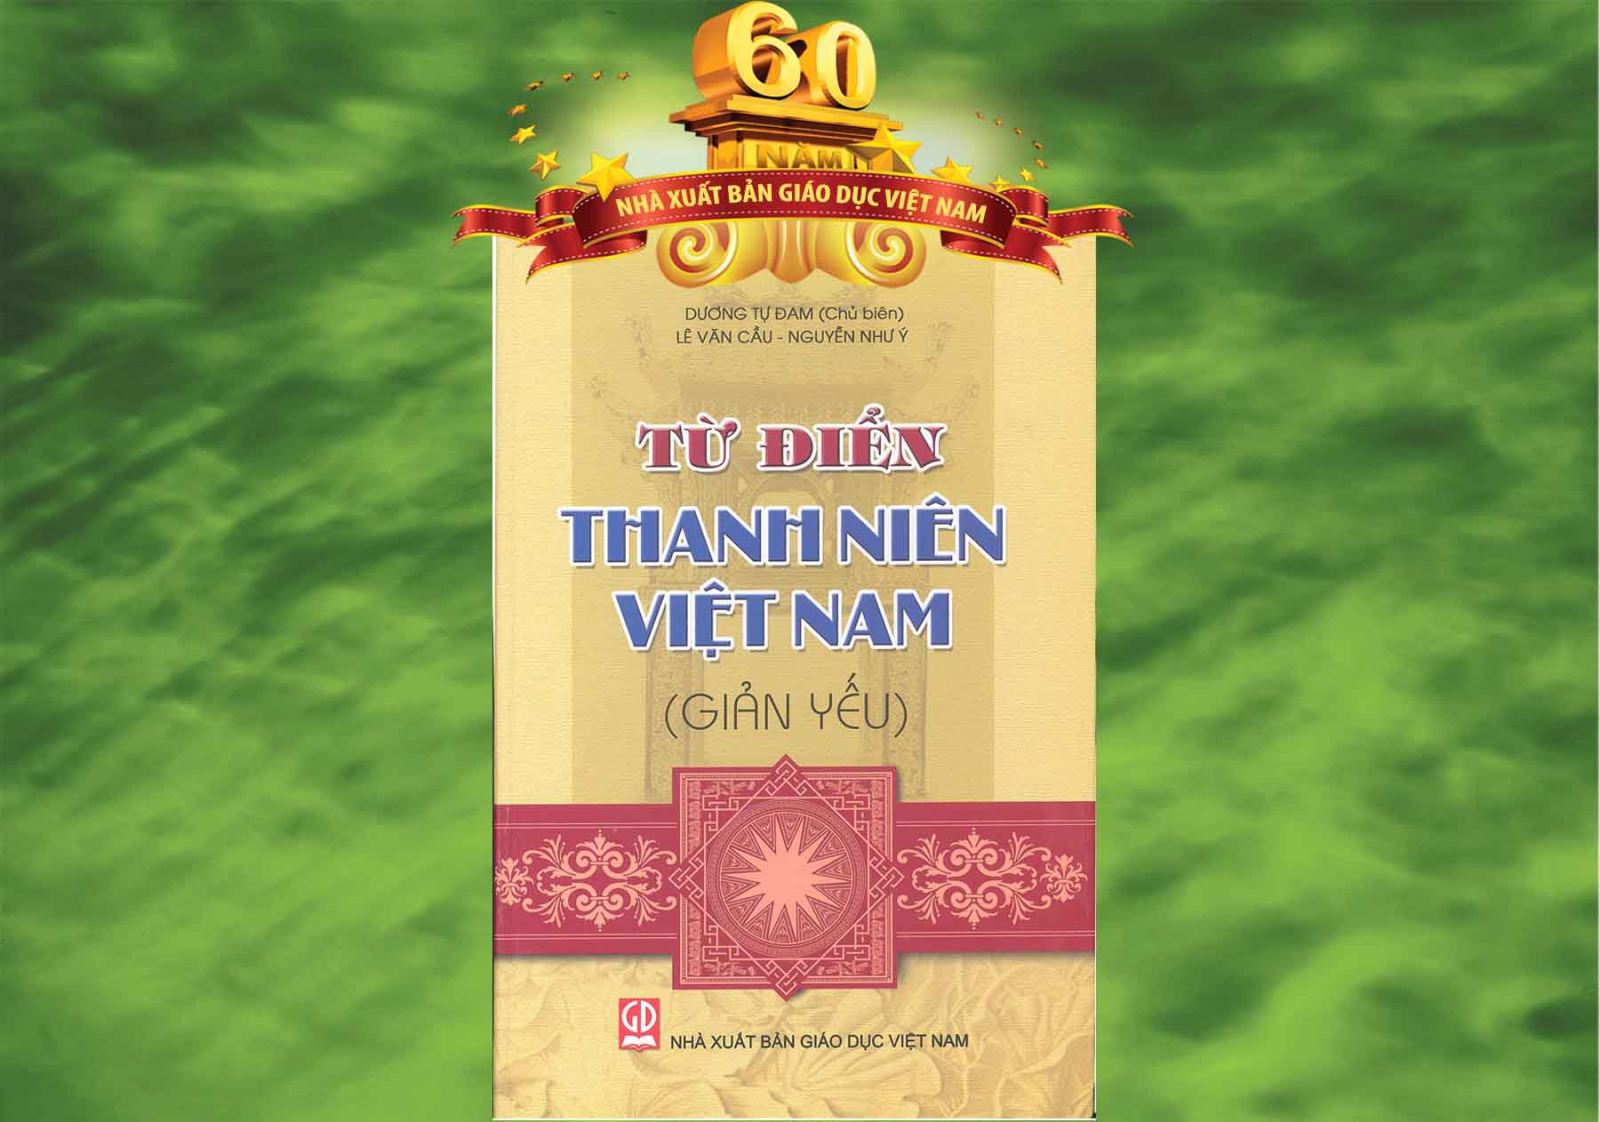 Từ điển Thanh niên Việt Nam